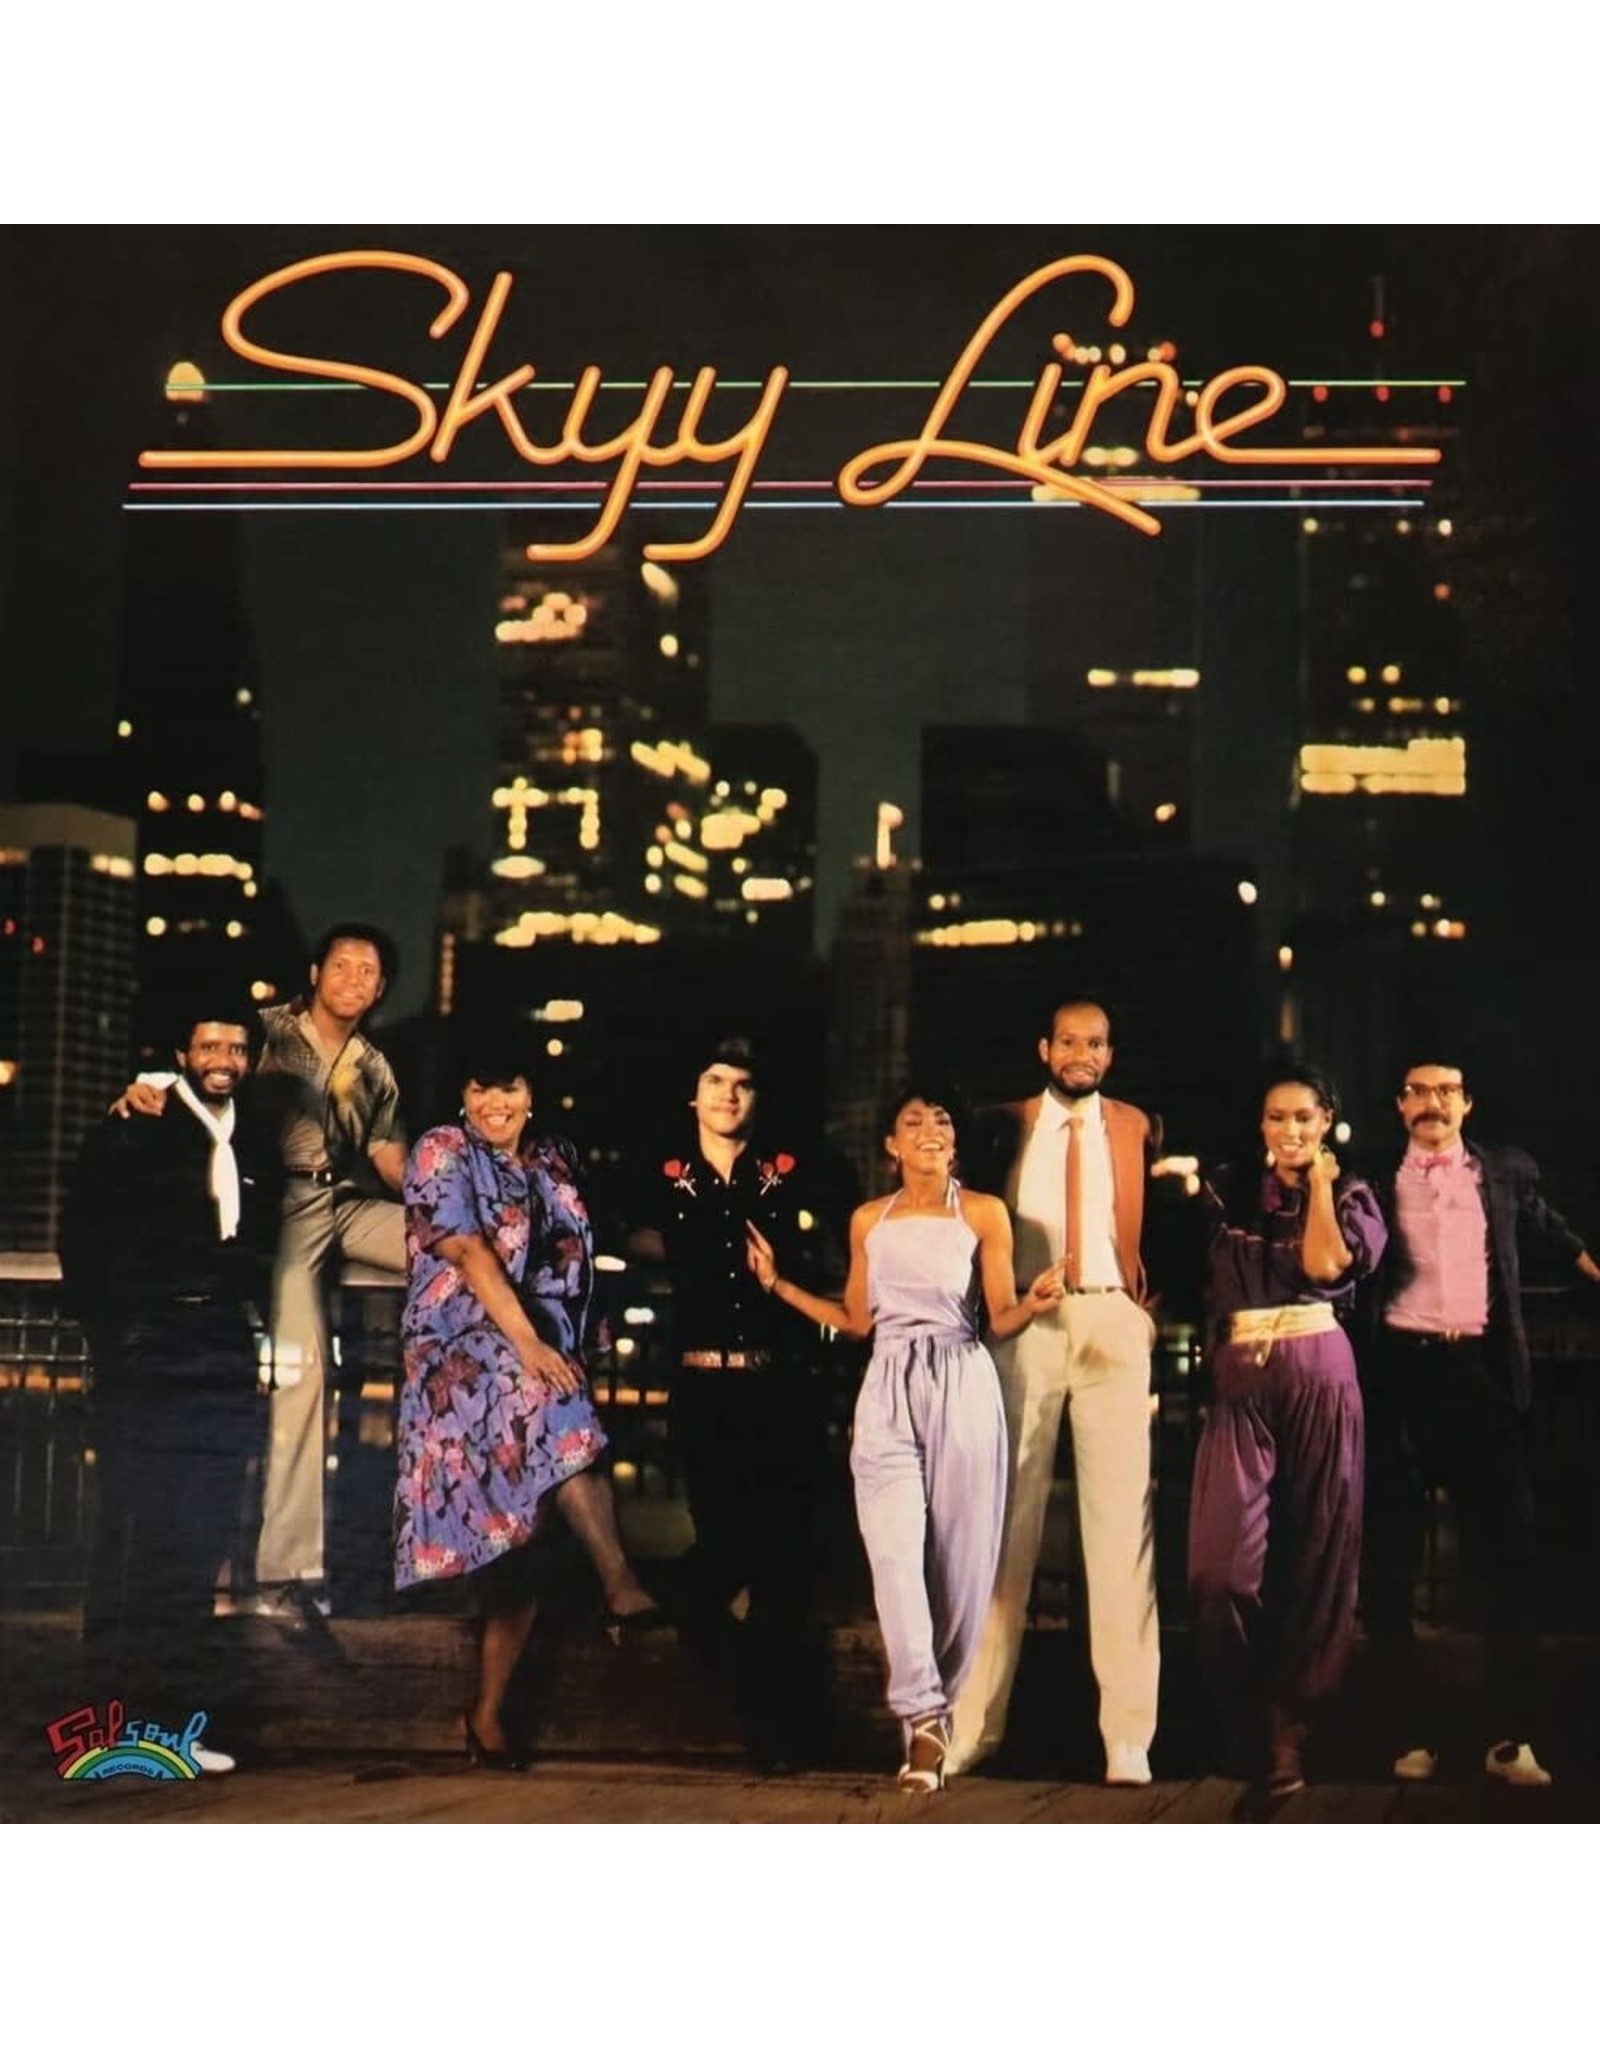 Skyy - Skyy Line (Purple Vinyl)